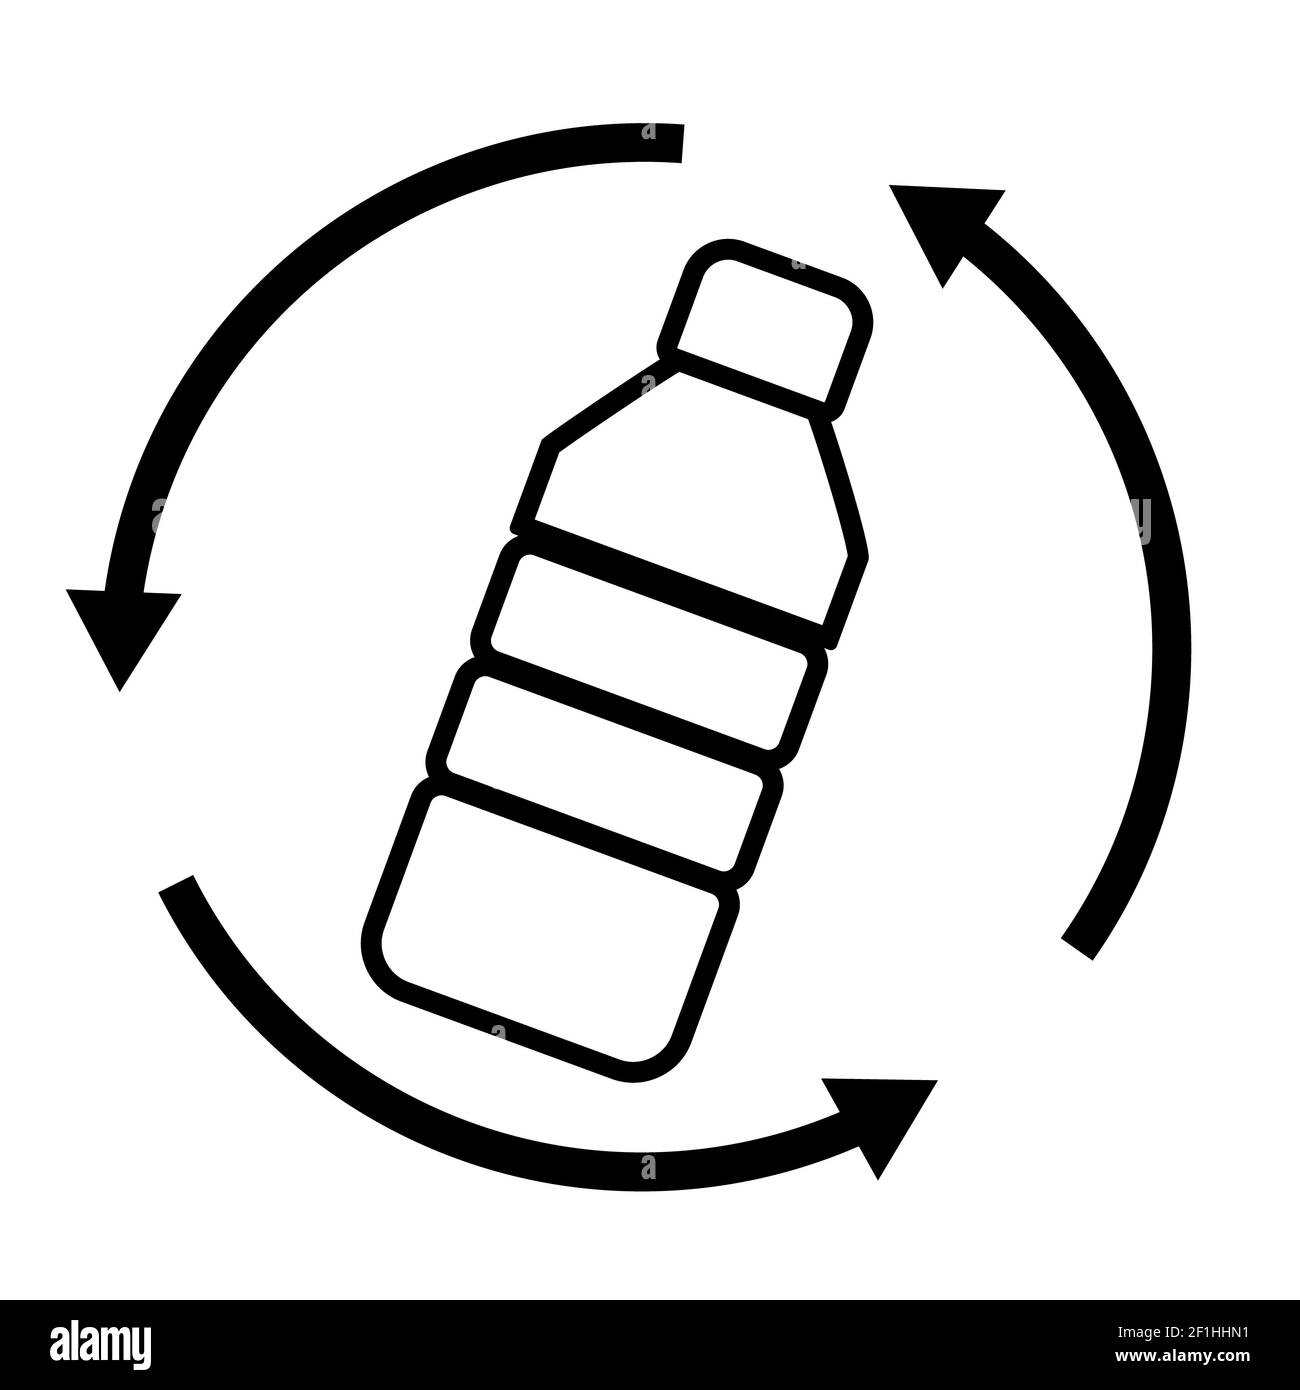 riciclaggio dei rifiuti delle bottiglie di plastica su sfondo bianco. logo di plastica riciclata. stile piatto. segnale di no alle bottiglie di plastica. Foto Stock